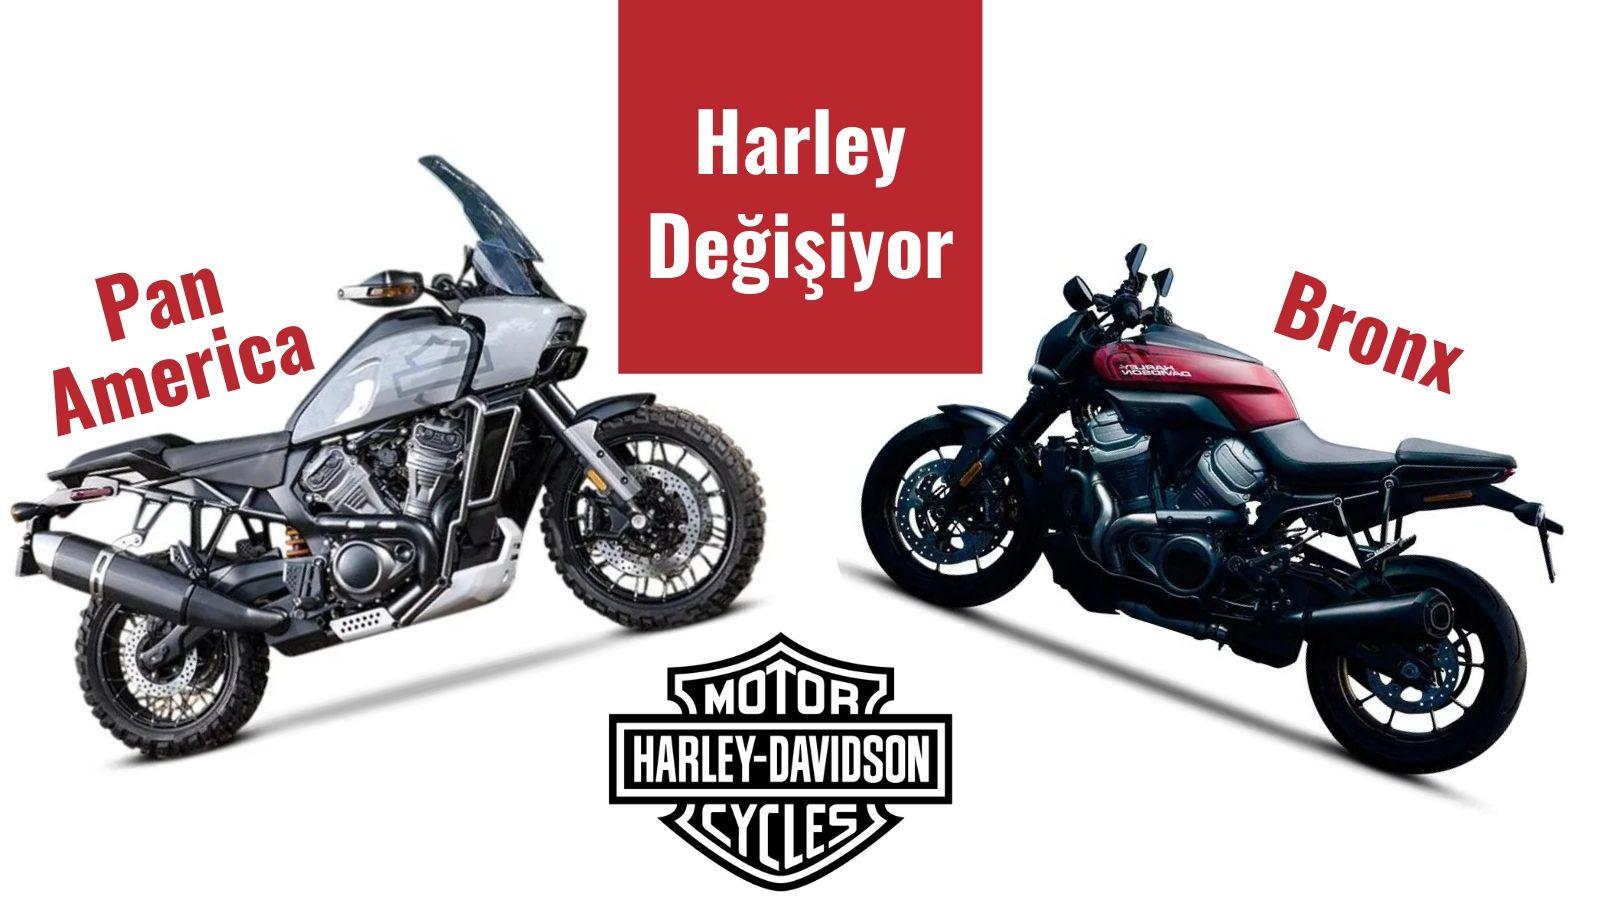 Harley Davidson Değişiyor